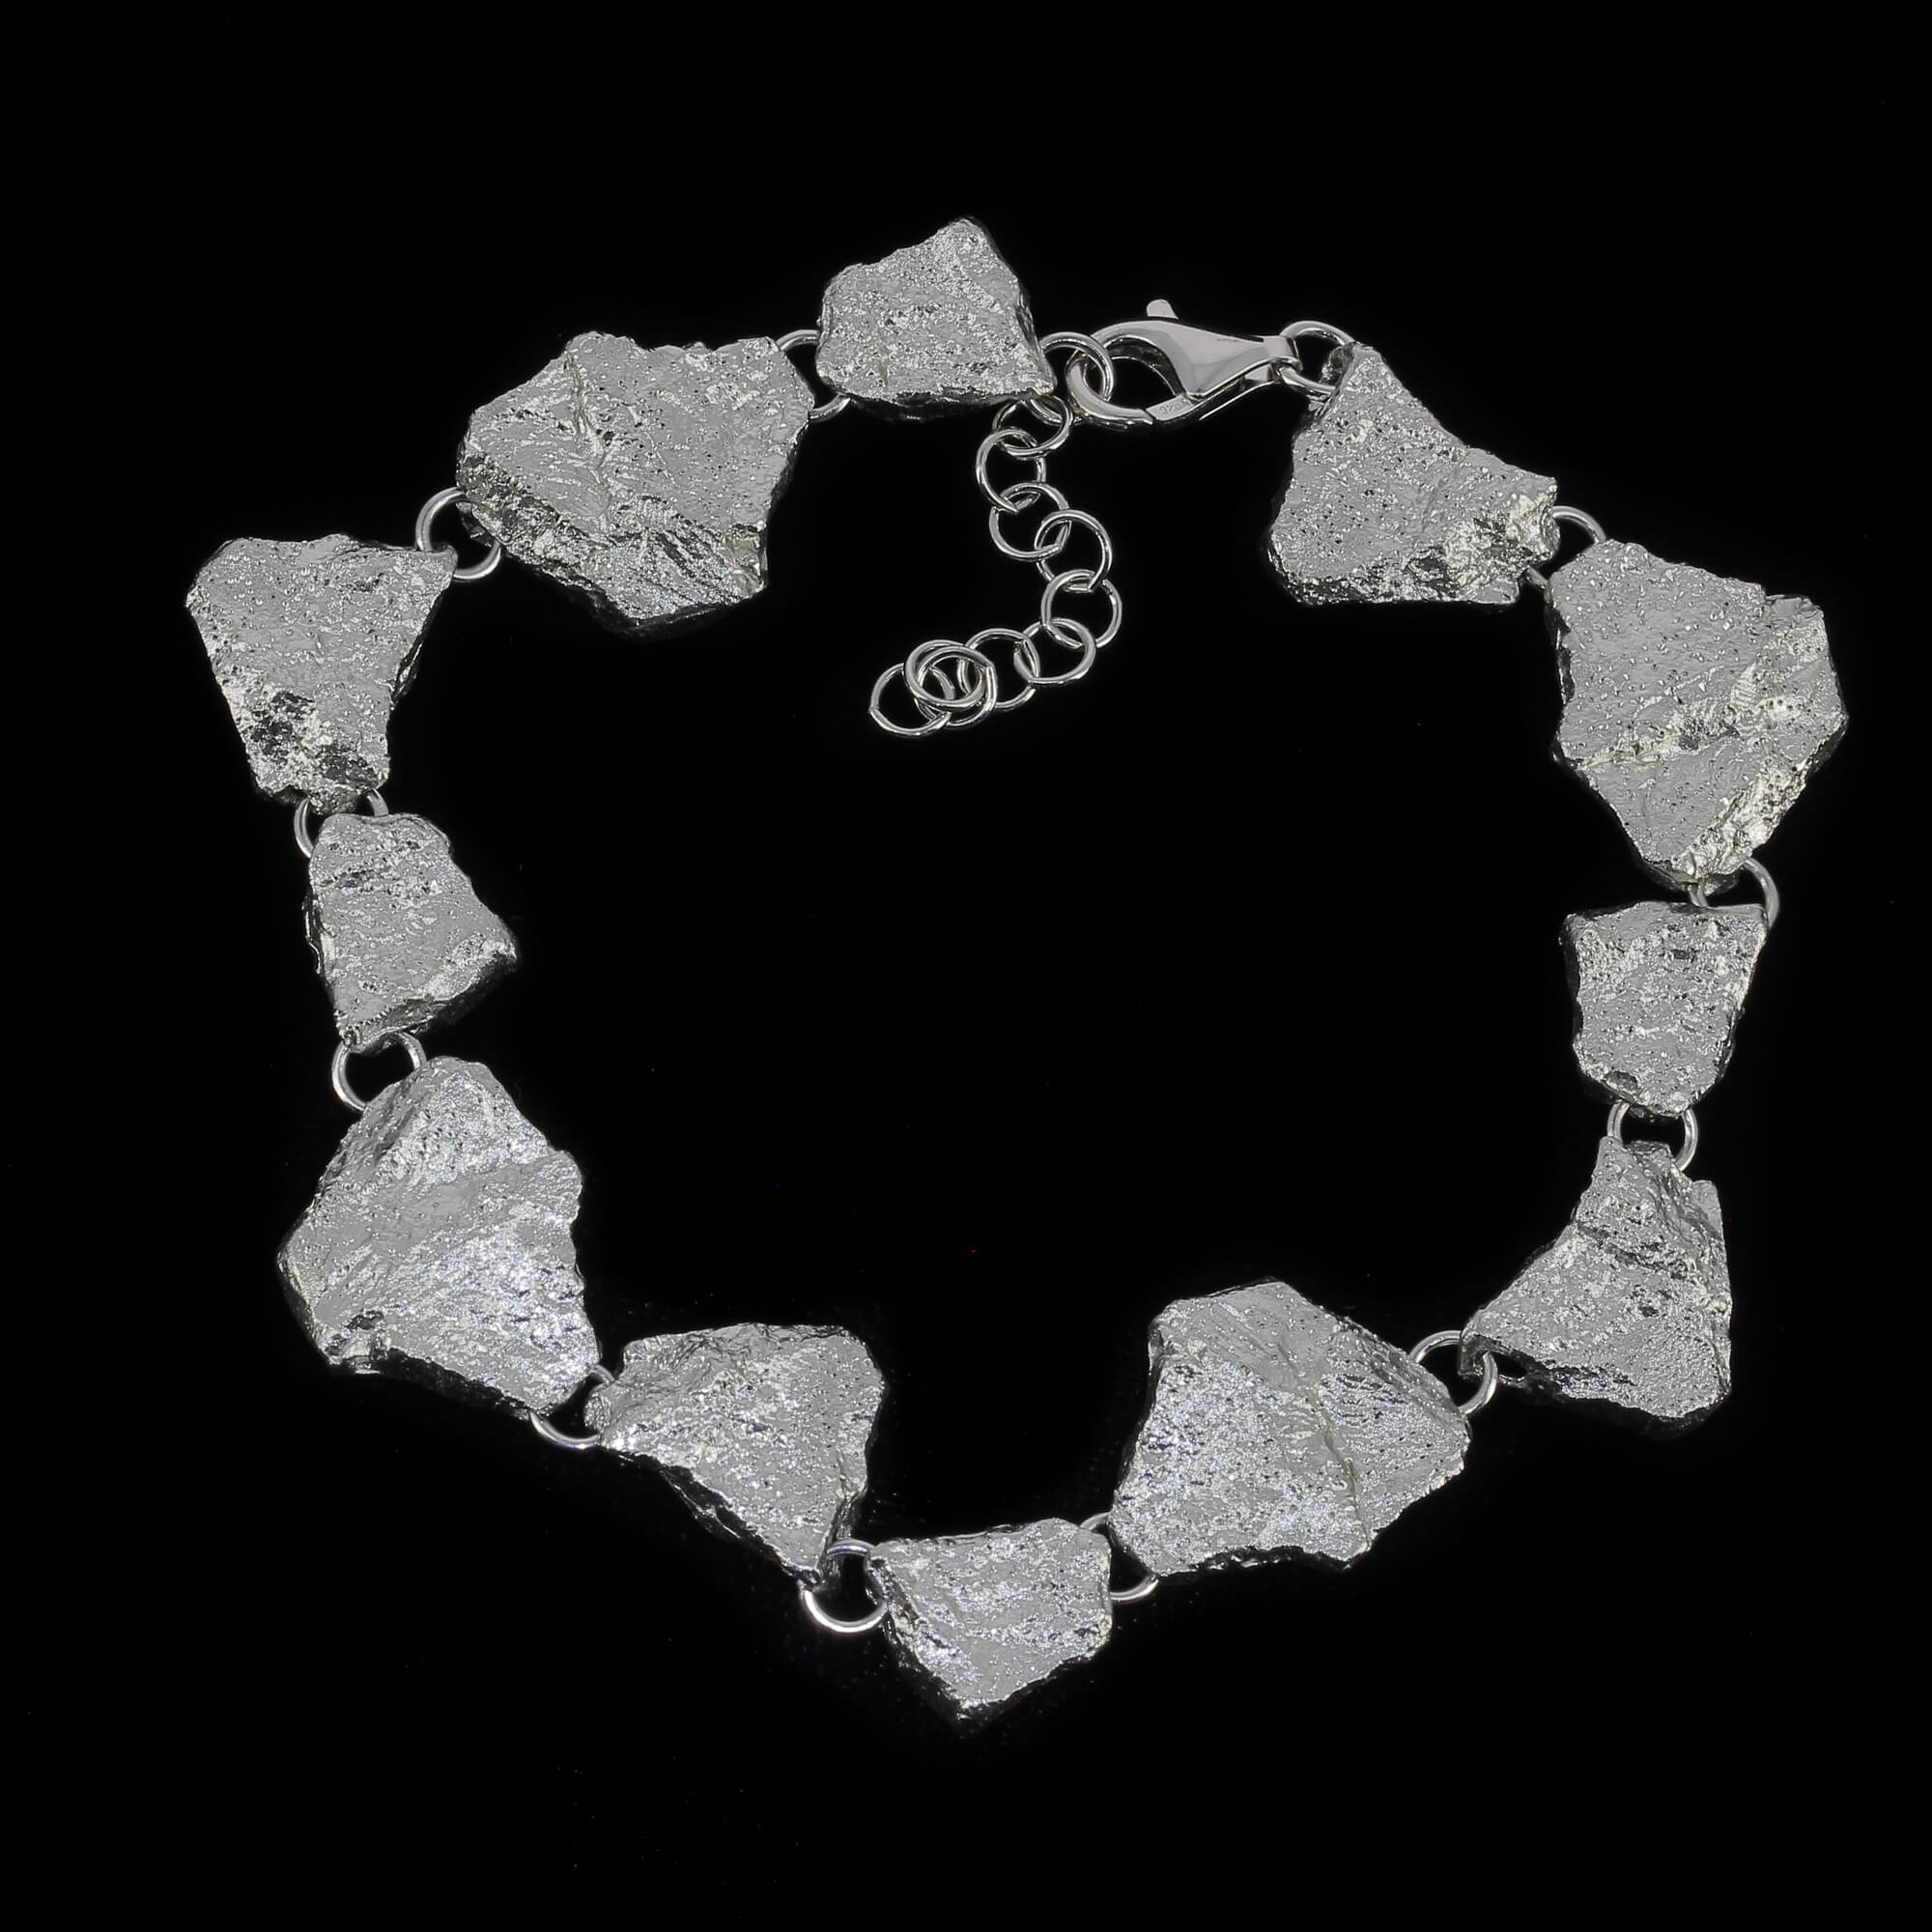 Stone-shaped silver bracelet